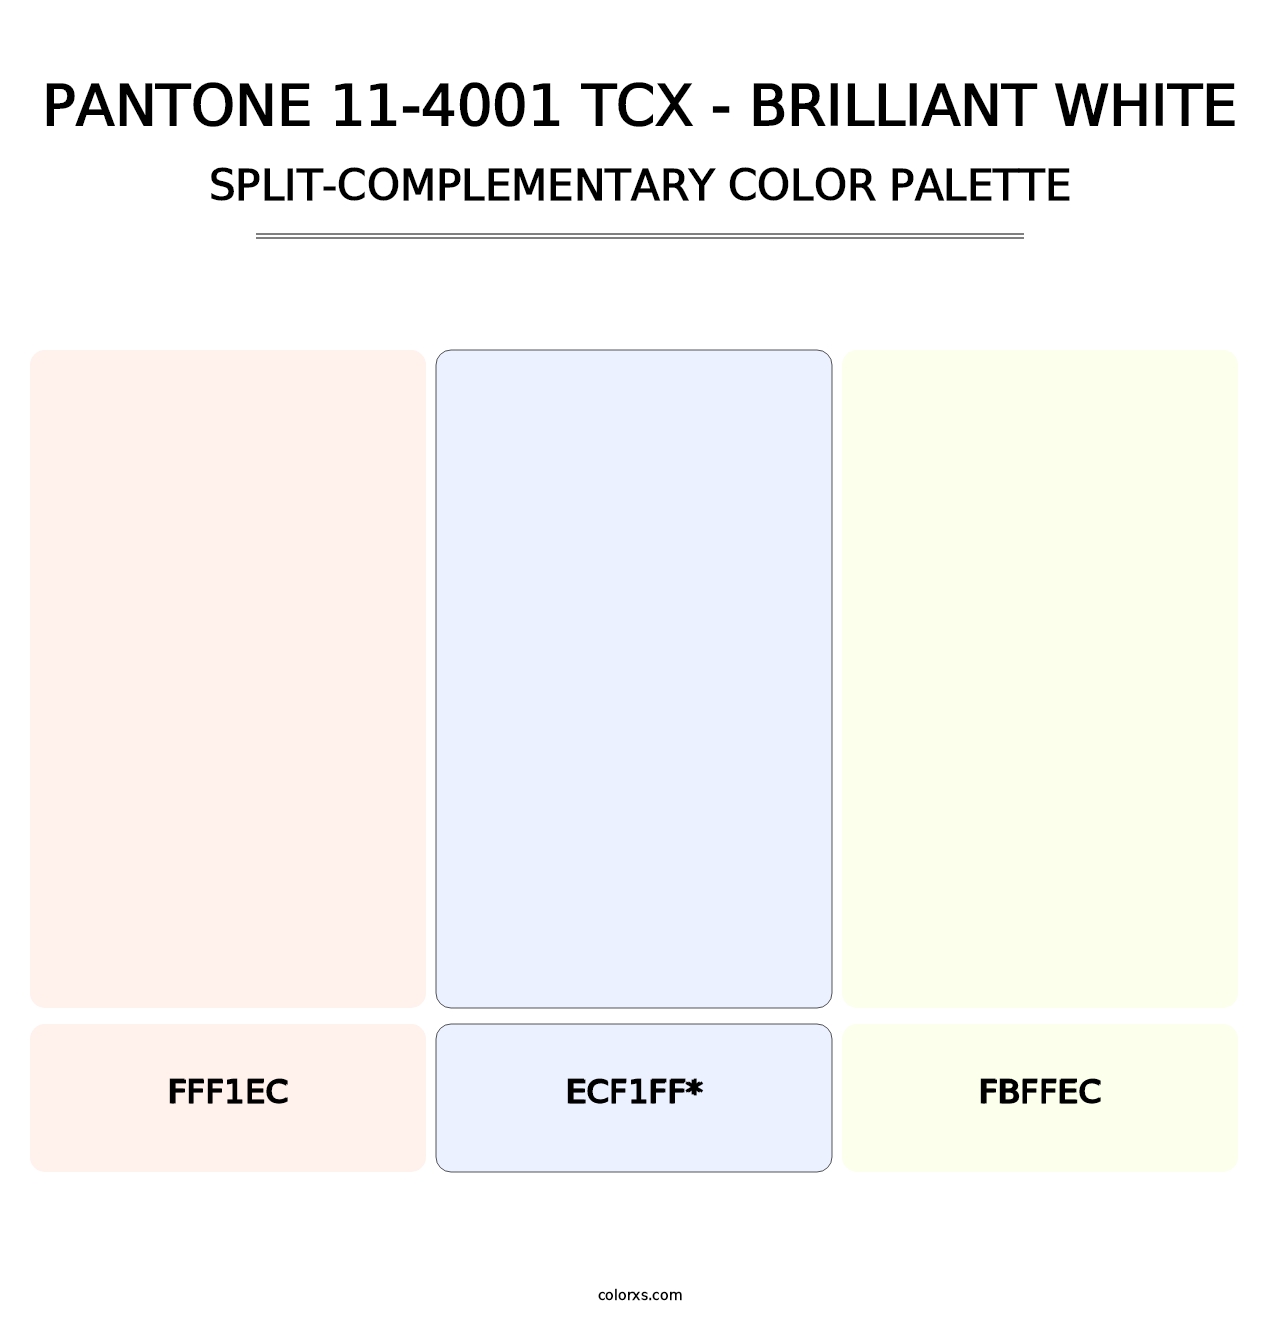 PANTONE 11-4001 TCX - Brilliant White - Split-Complementary Color Palette